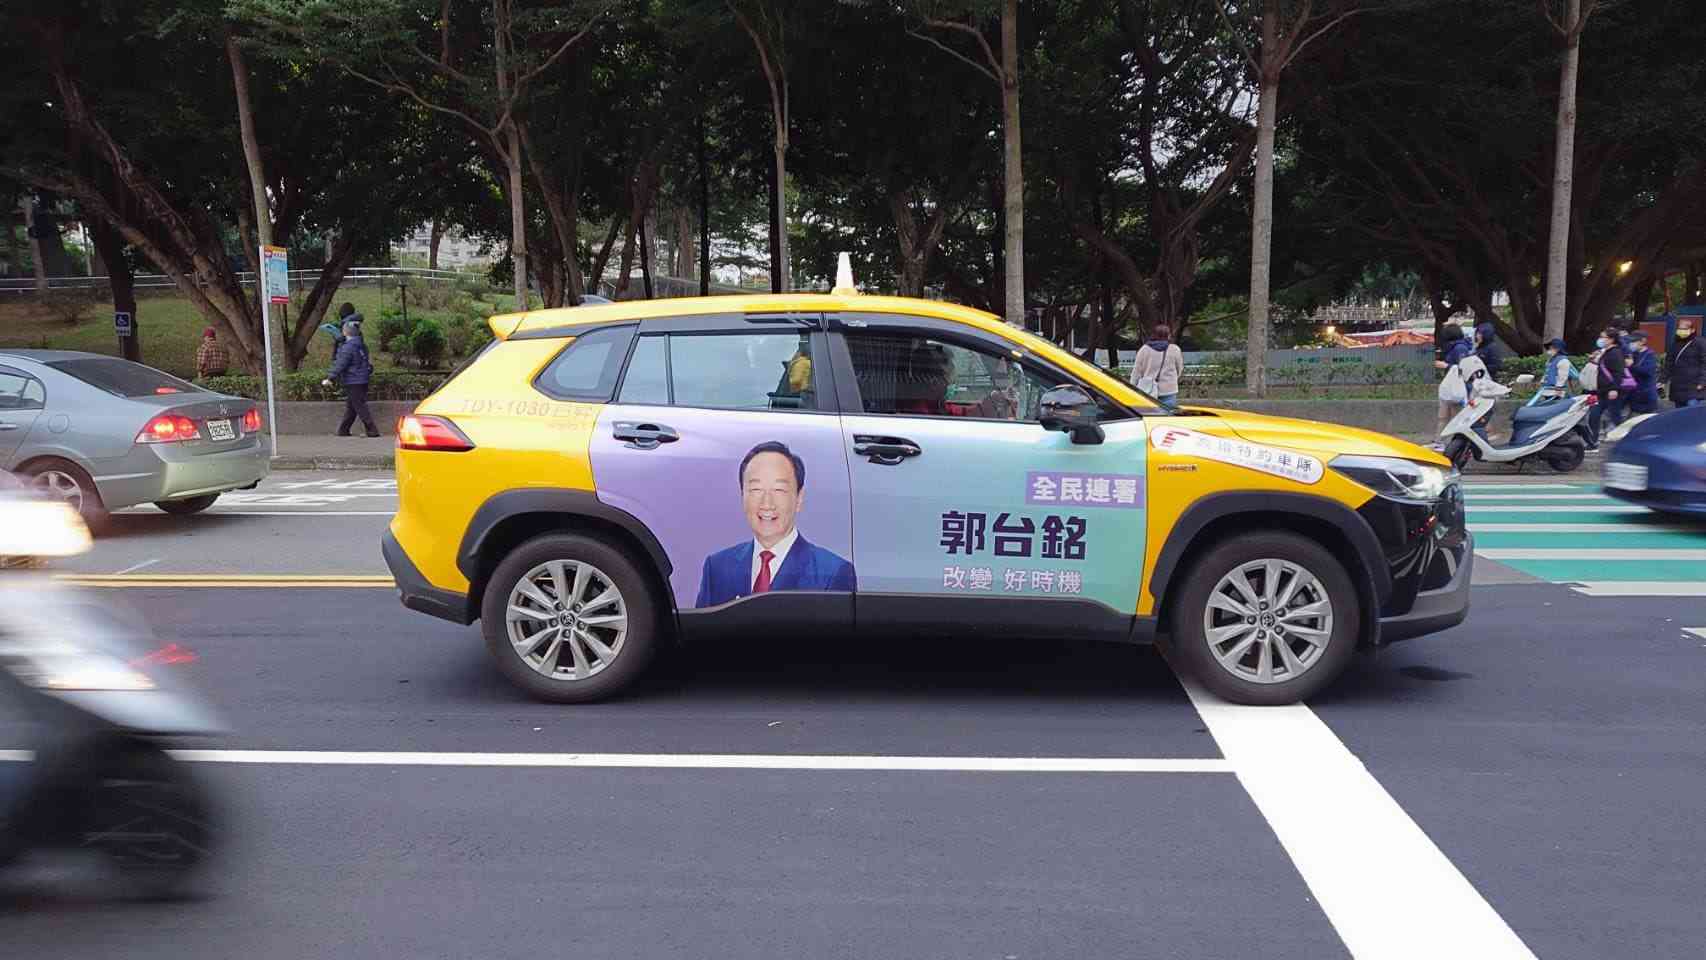 ▲タクシーに貼り付けられた選挙関連の広告＝12月17日、桃園（ＮＮＡ撮影）